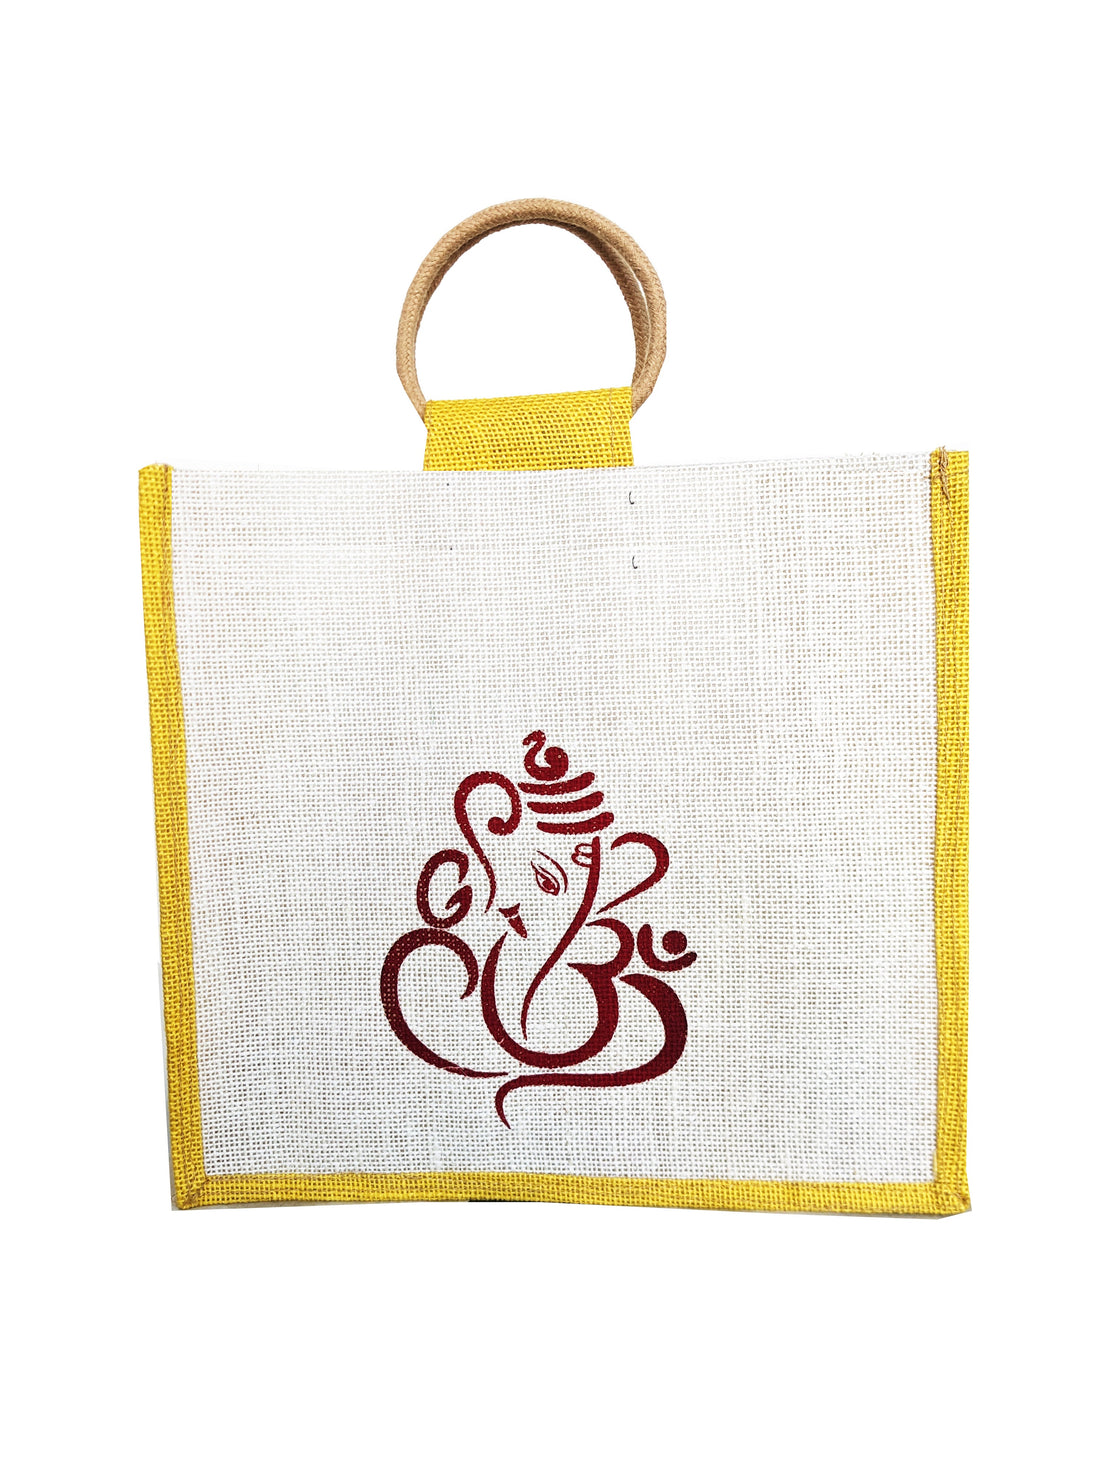 ROYAL FABRIC BAGS Jute Ganesha Print Bags and Jute Grocery Bag, Carry Bag, Tiffin Bag, Multipurpose Bag - Red